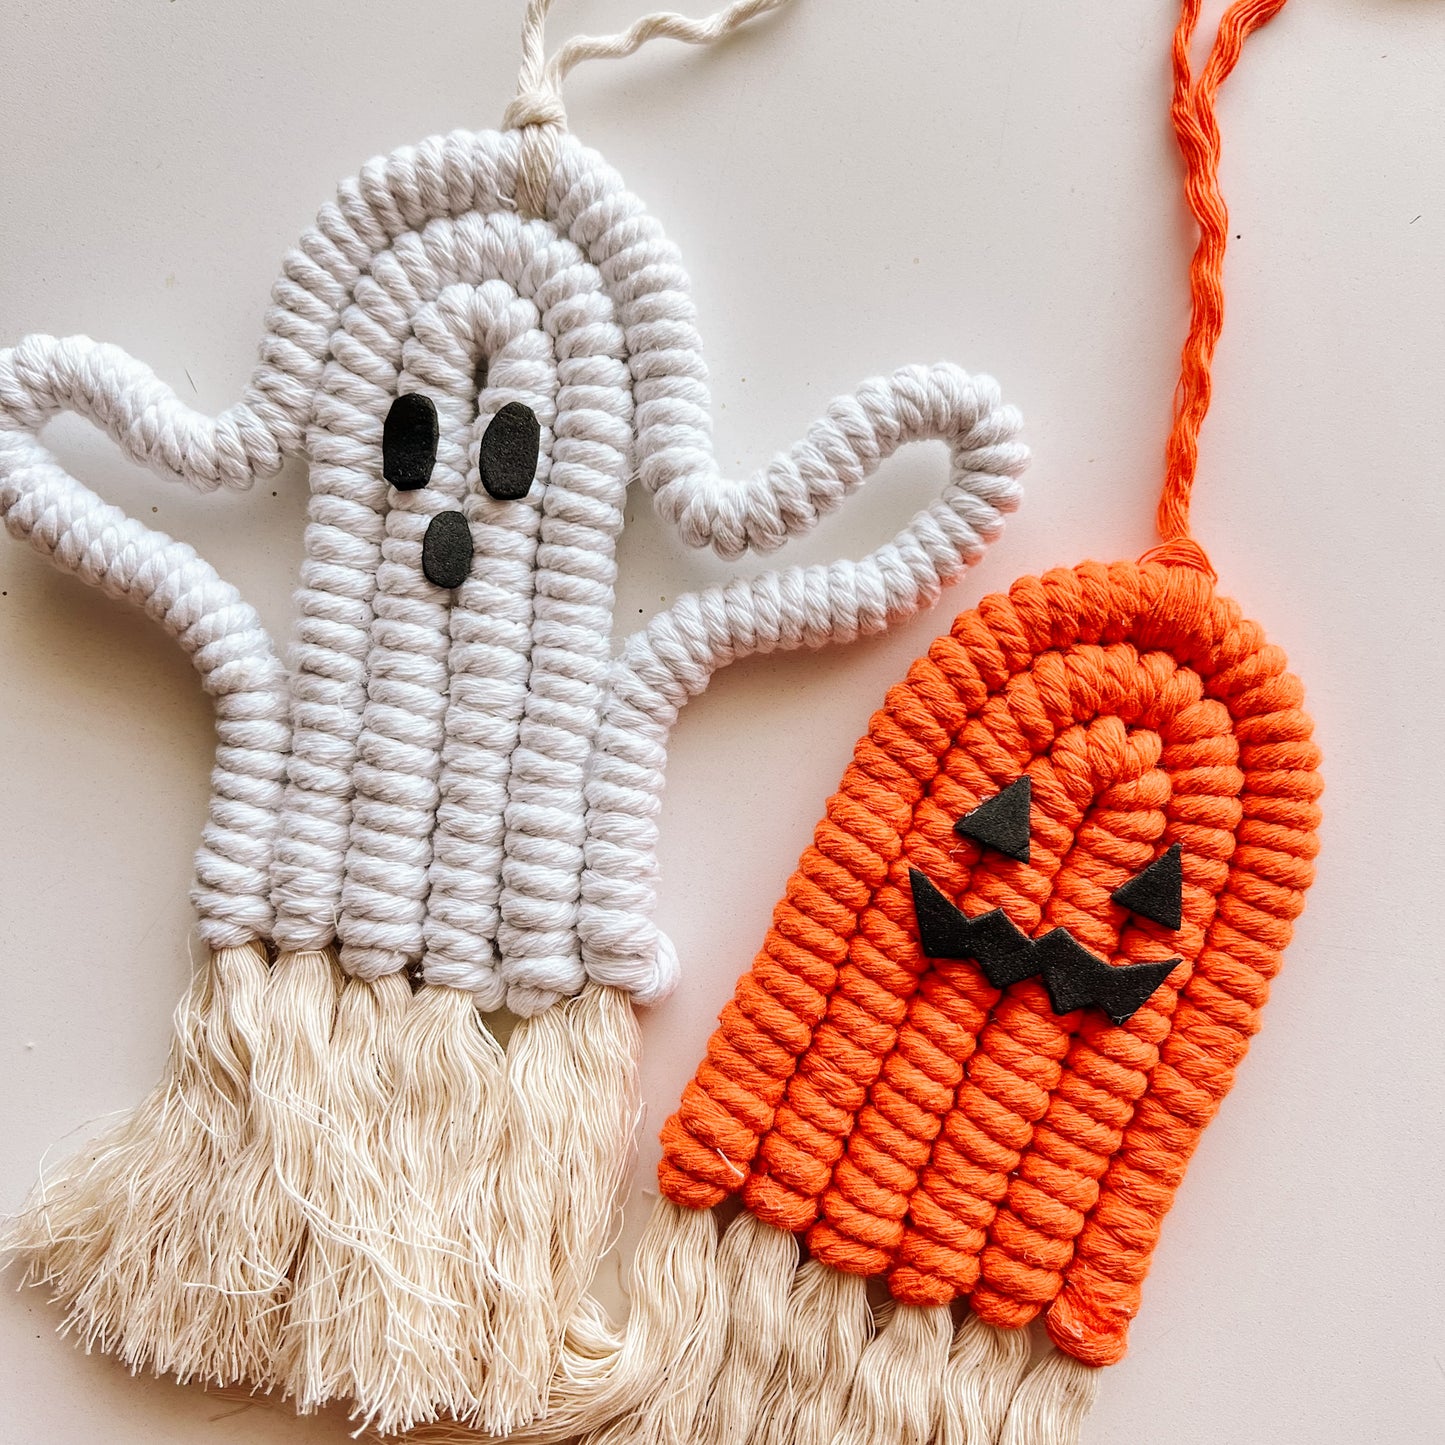 Spooky Macrame Hangings